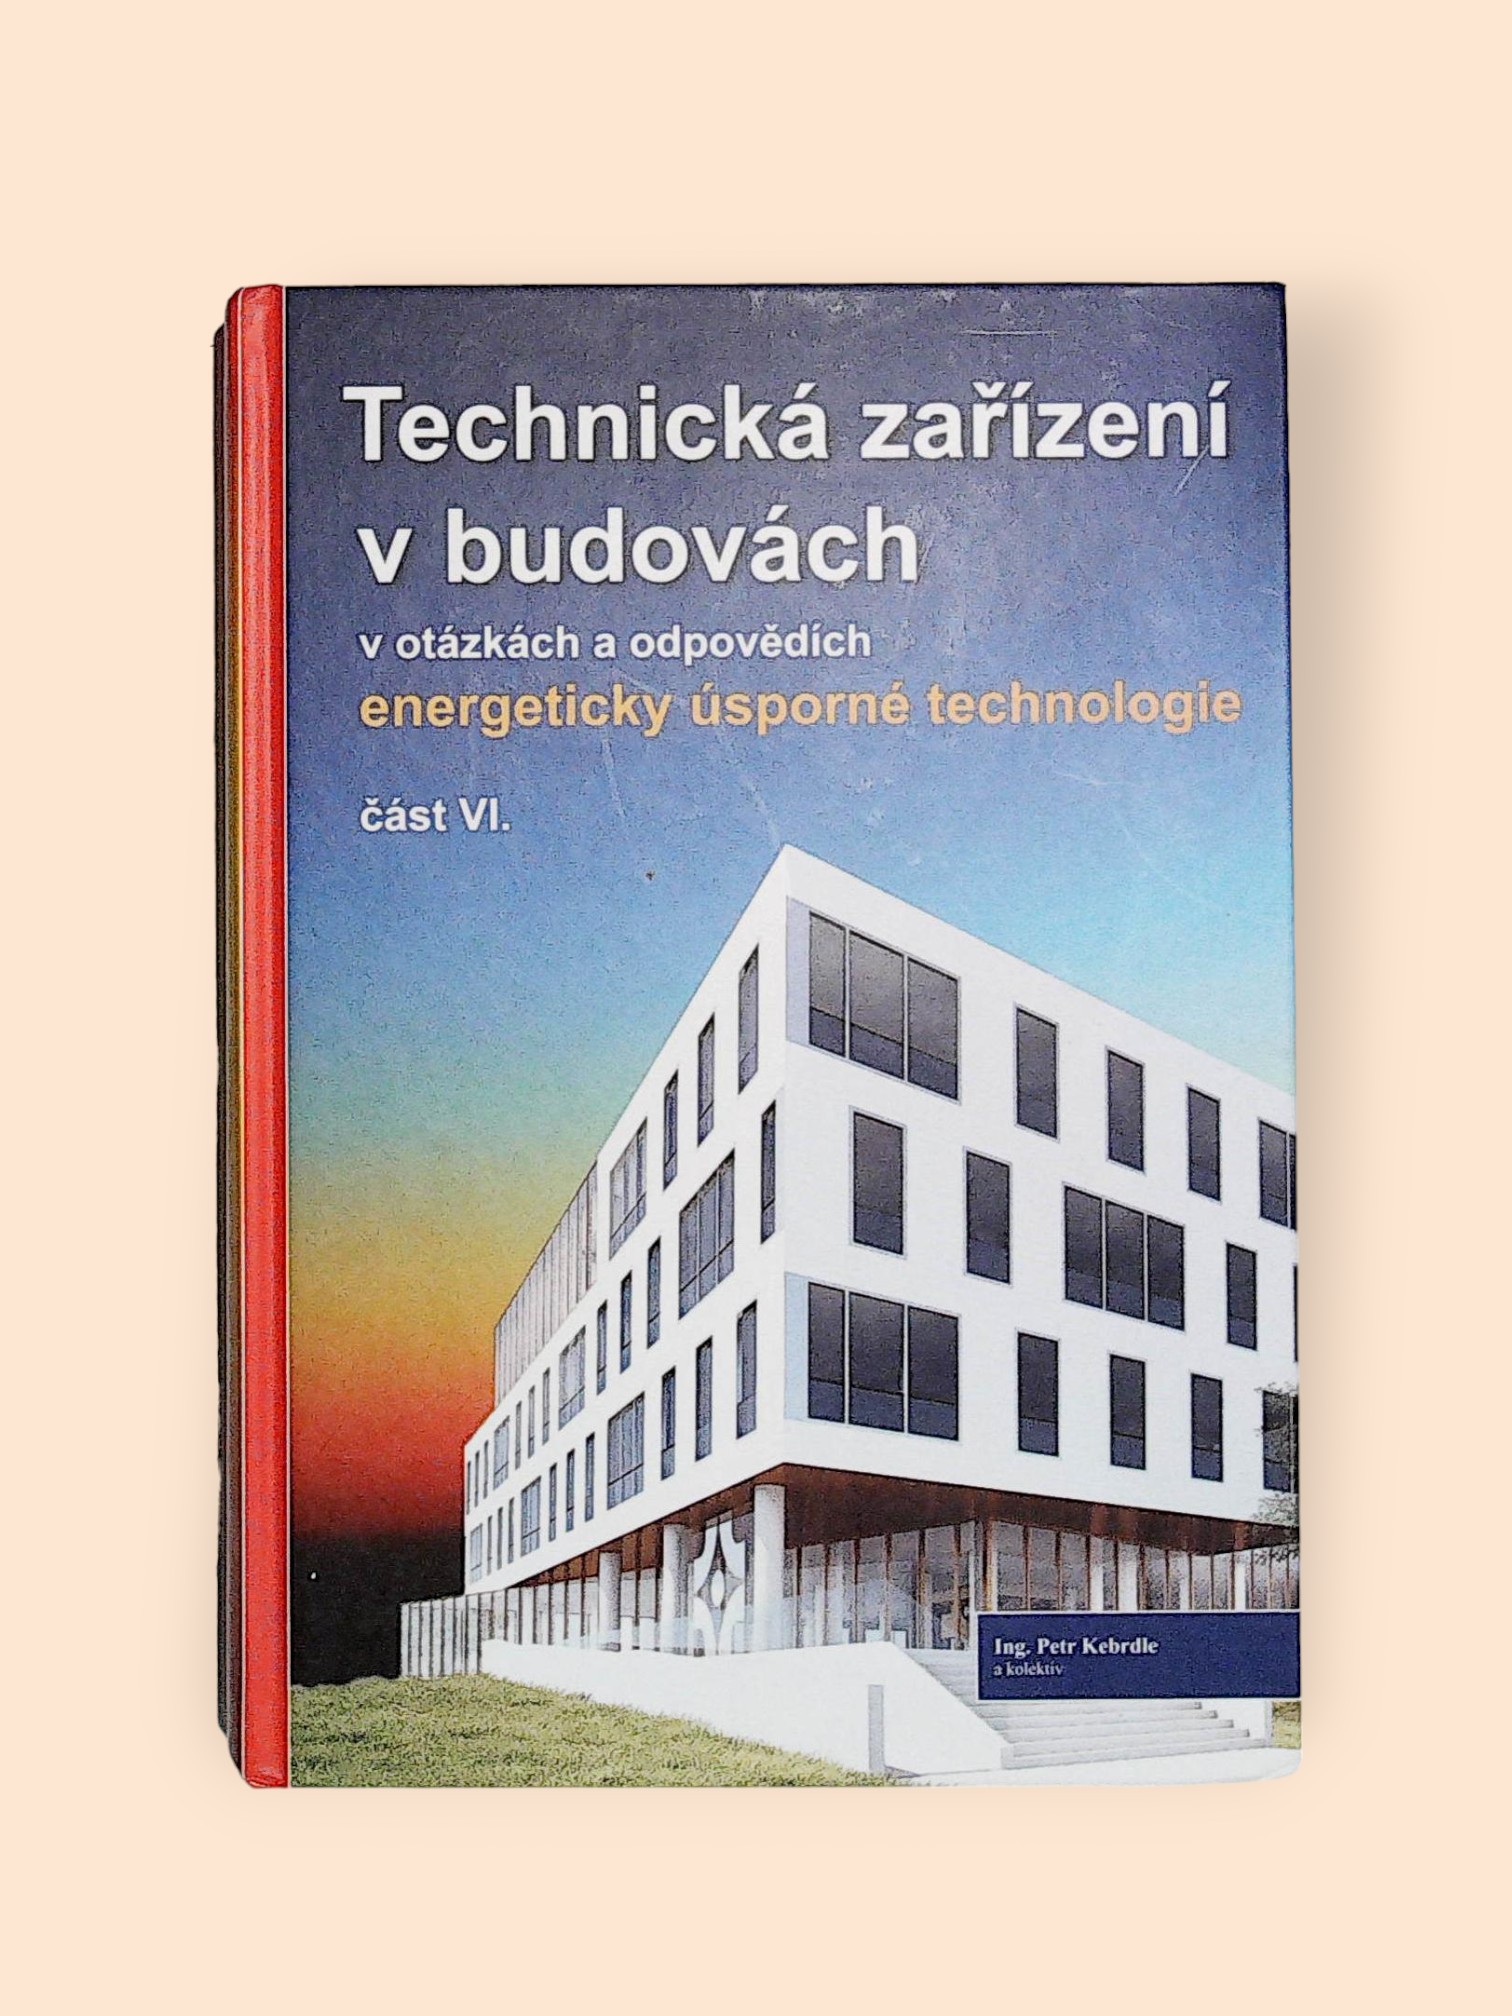 Technická-zařízení-v-budovách-v-otázkách-a-odpovědích-energeticky-úsporné-technologie-část-VI.-Kebrdle-Petr